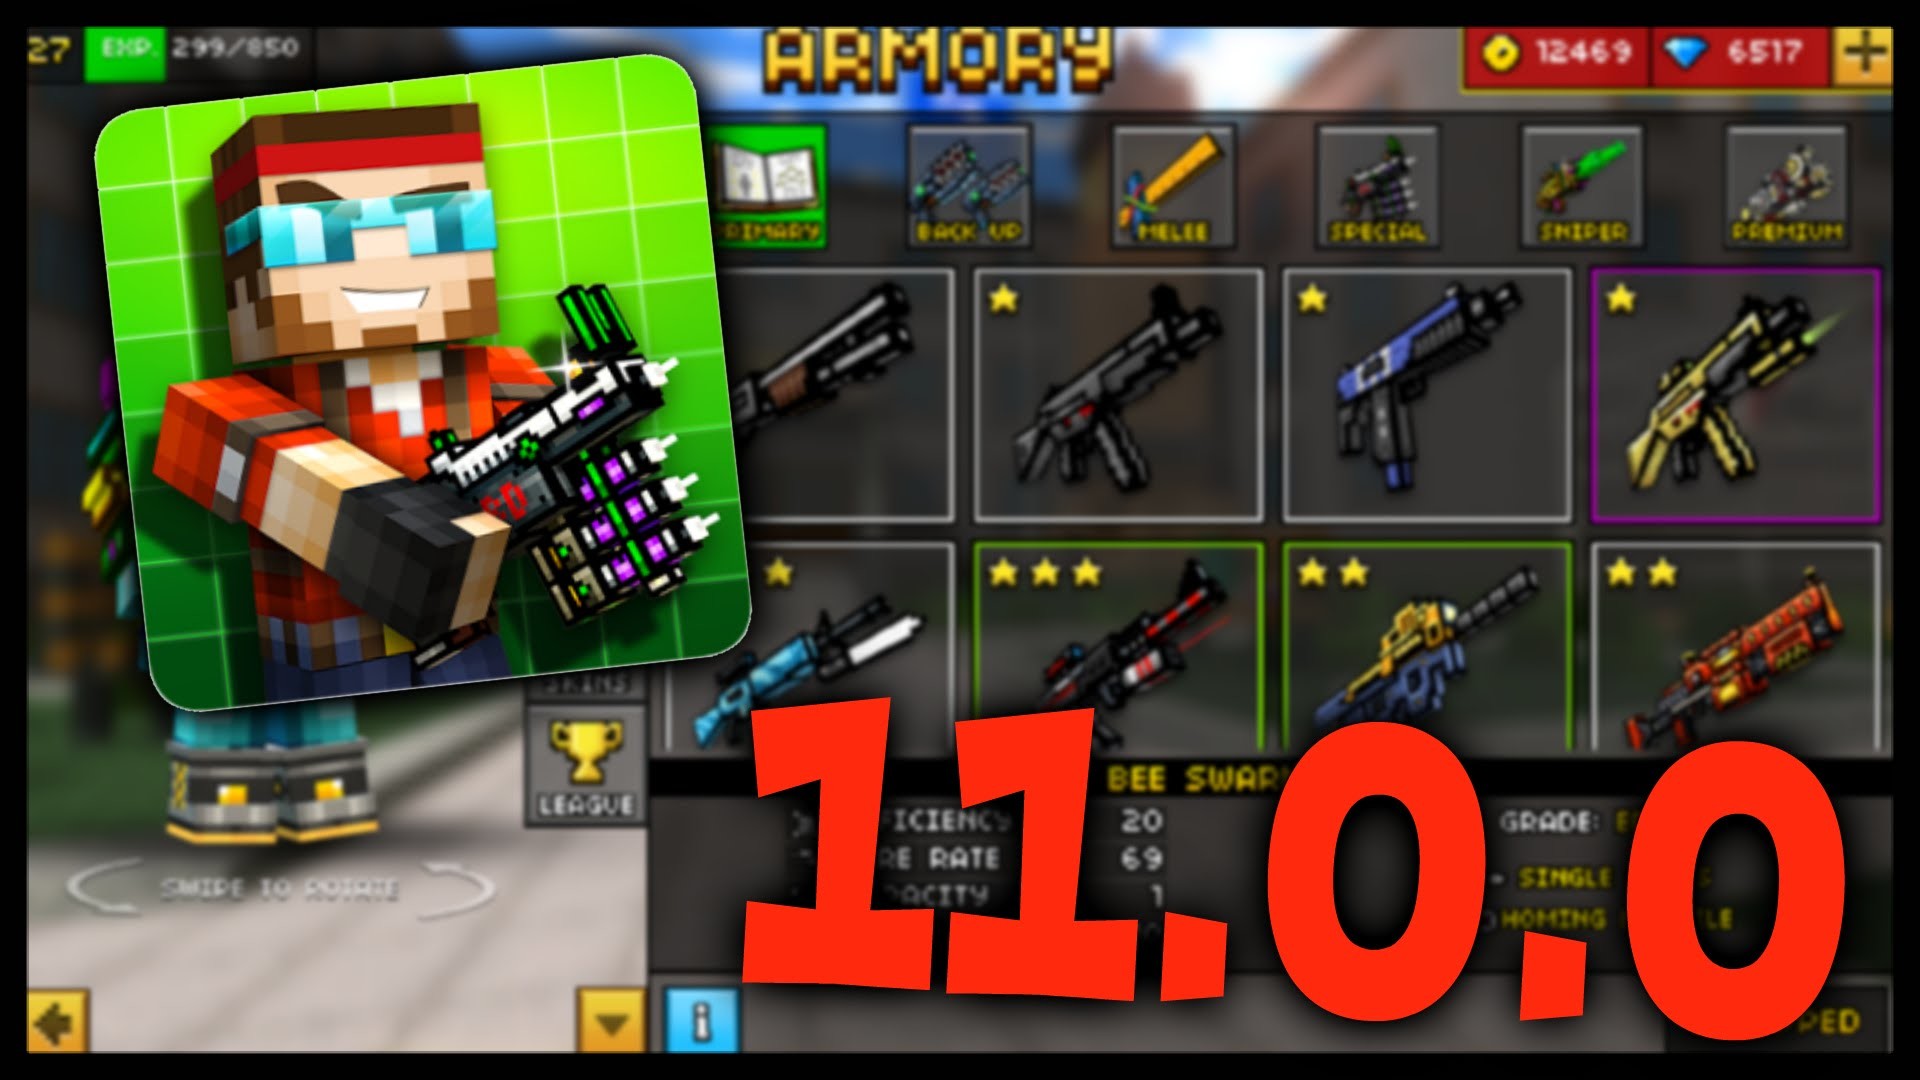 1920x1080 Pixel Gun 3D - New 11.0.0 Update Review [NEW GAMEMODE & GOLD GUNS] - YouTube